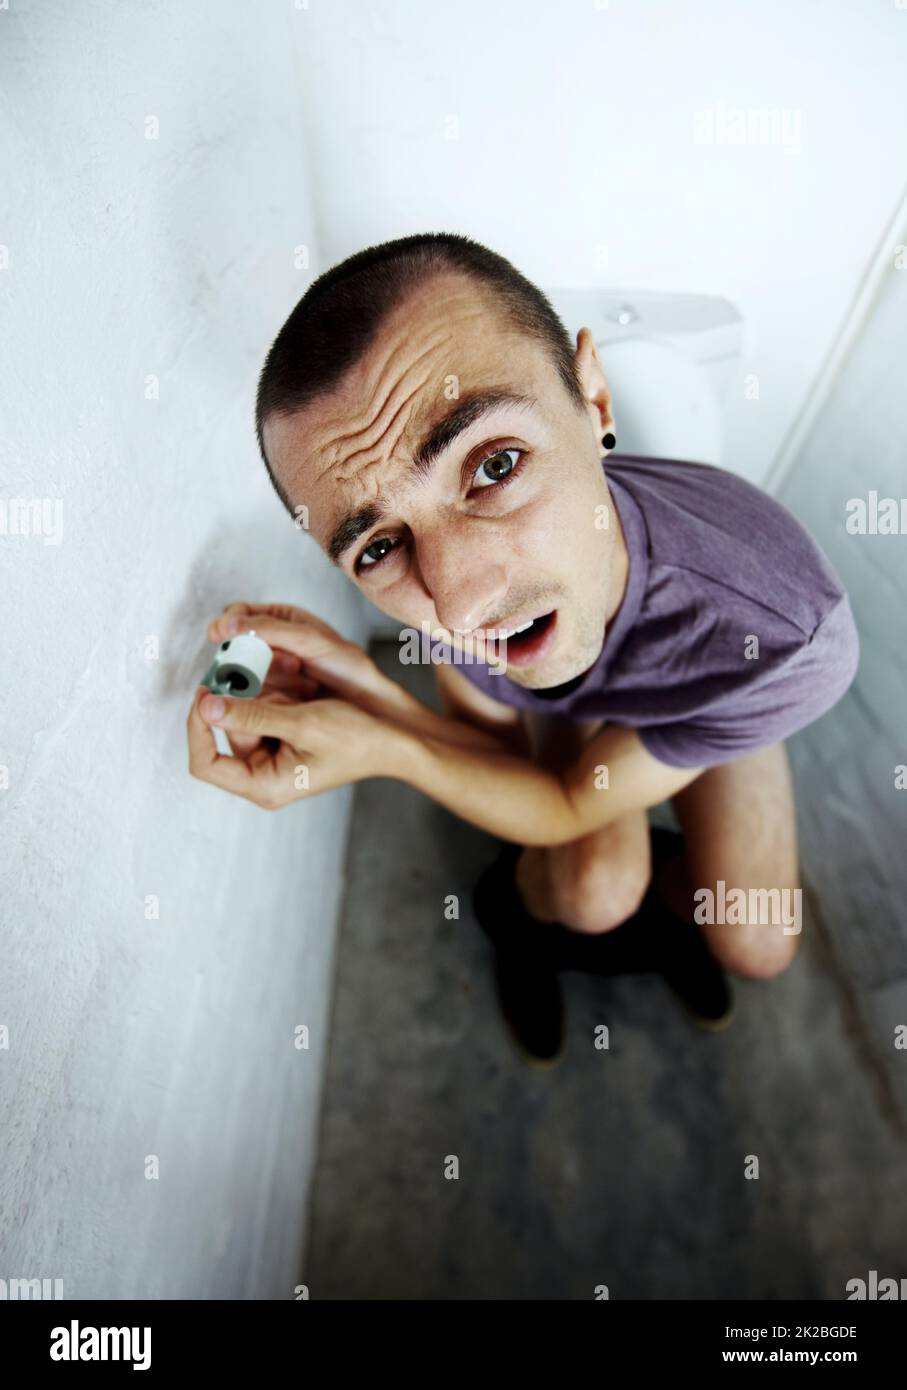 Sensation d'exposition. Un jeune homme s'est coincé dans une toilette essayant d'atteindre un petit rouleau de papier toilette. Banque D'Images